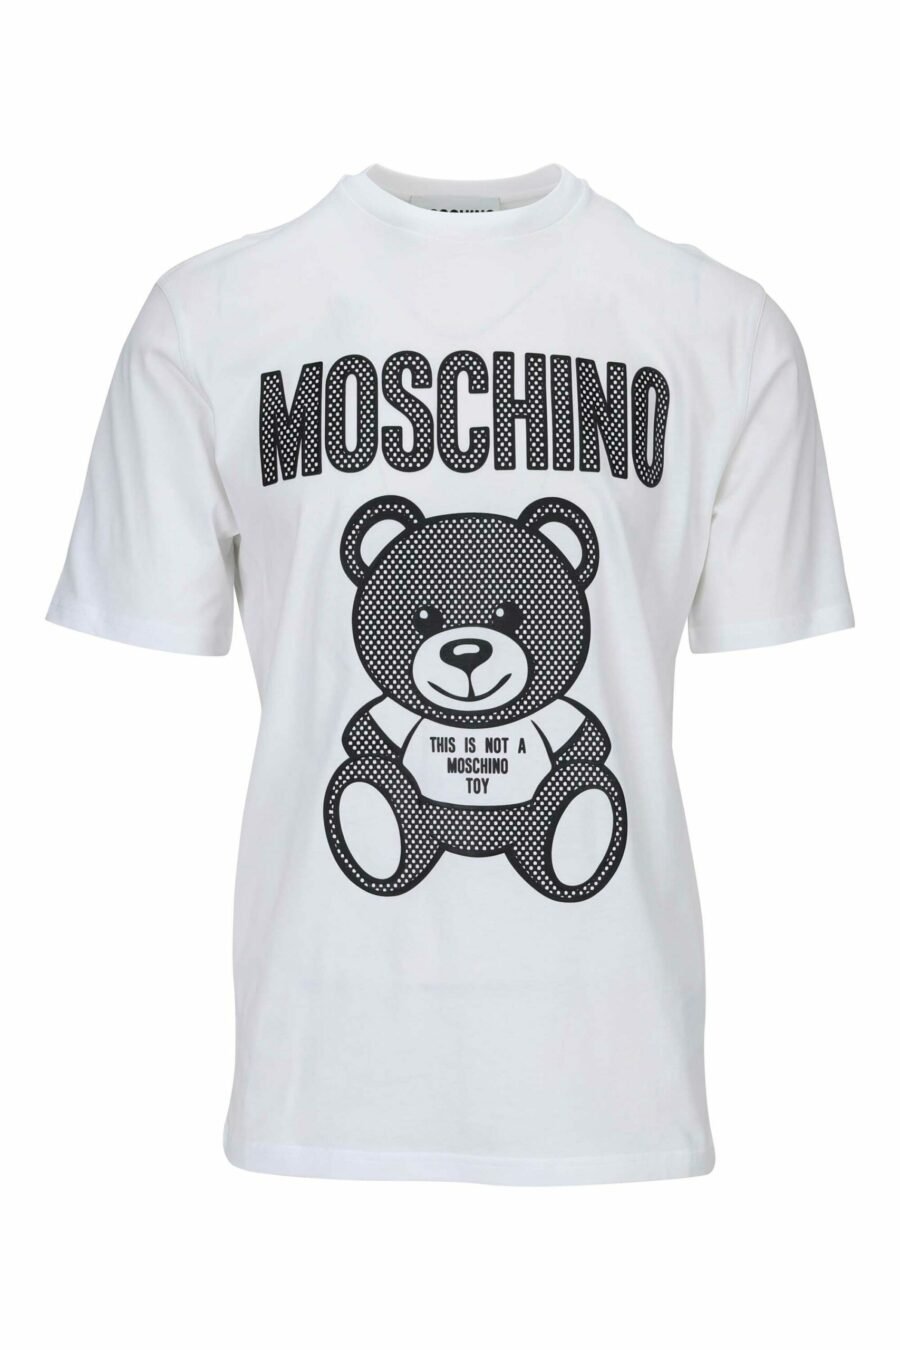 Camiseta blanca con maxilogo oso en puntos monocromático - 667113455617 scaled